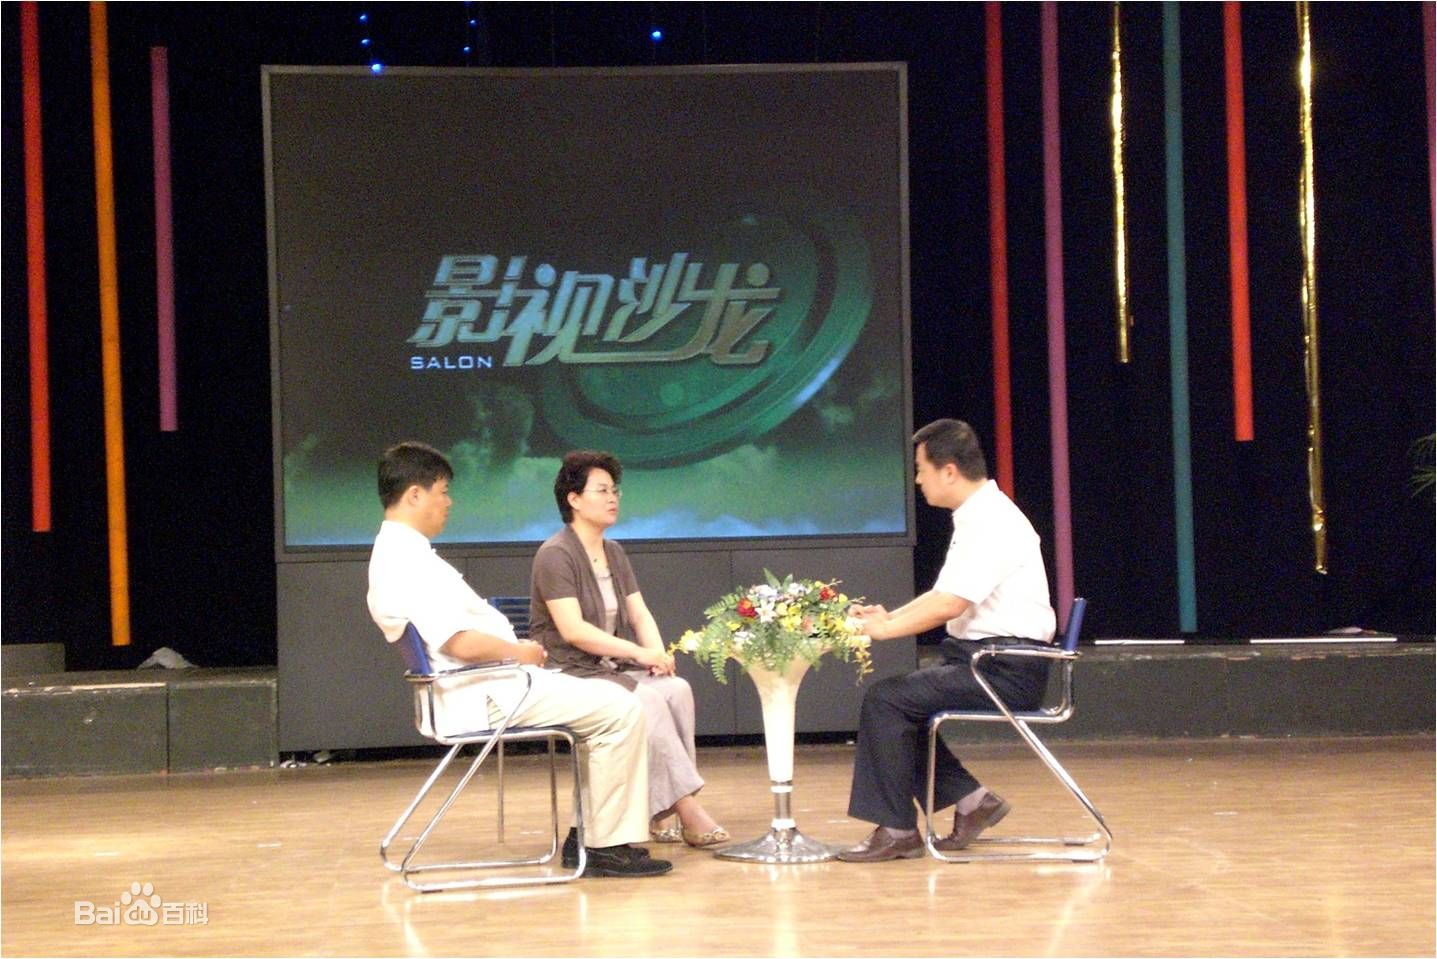 張玉霞教授參加淄博電視台節目錄製